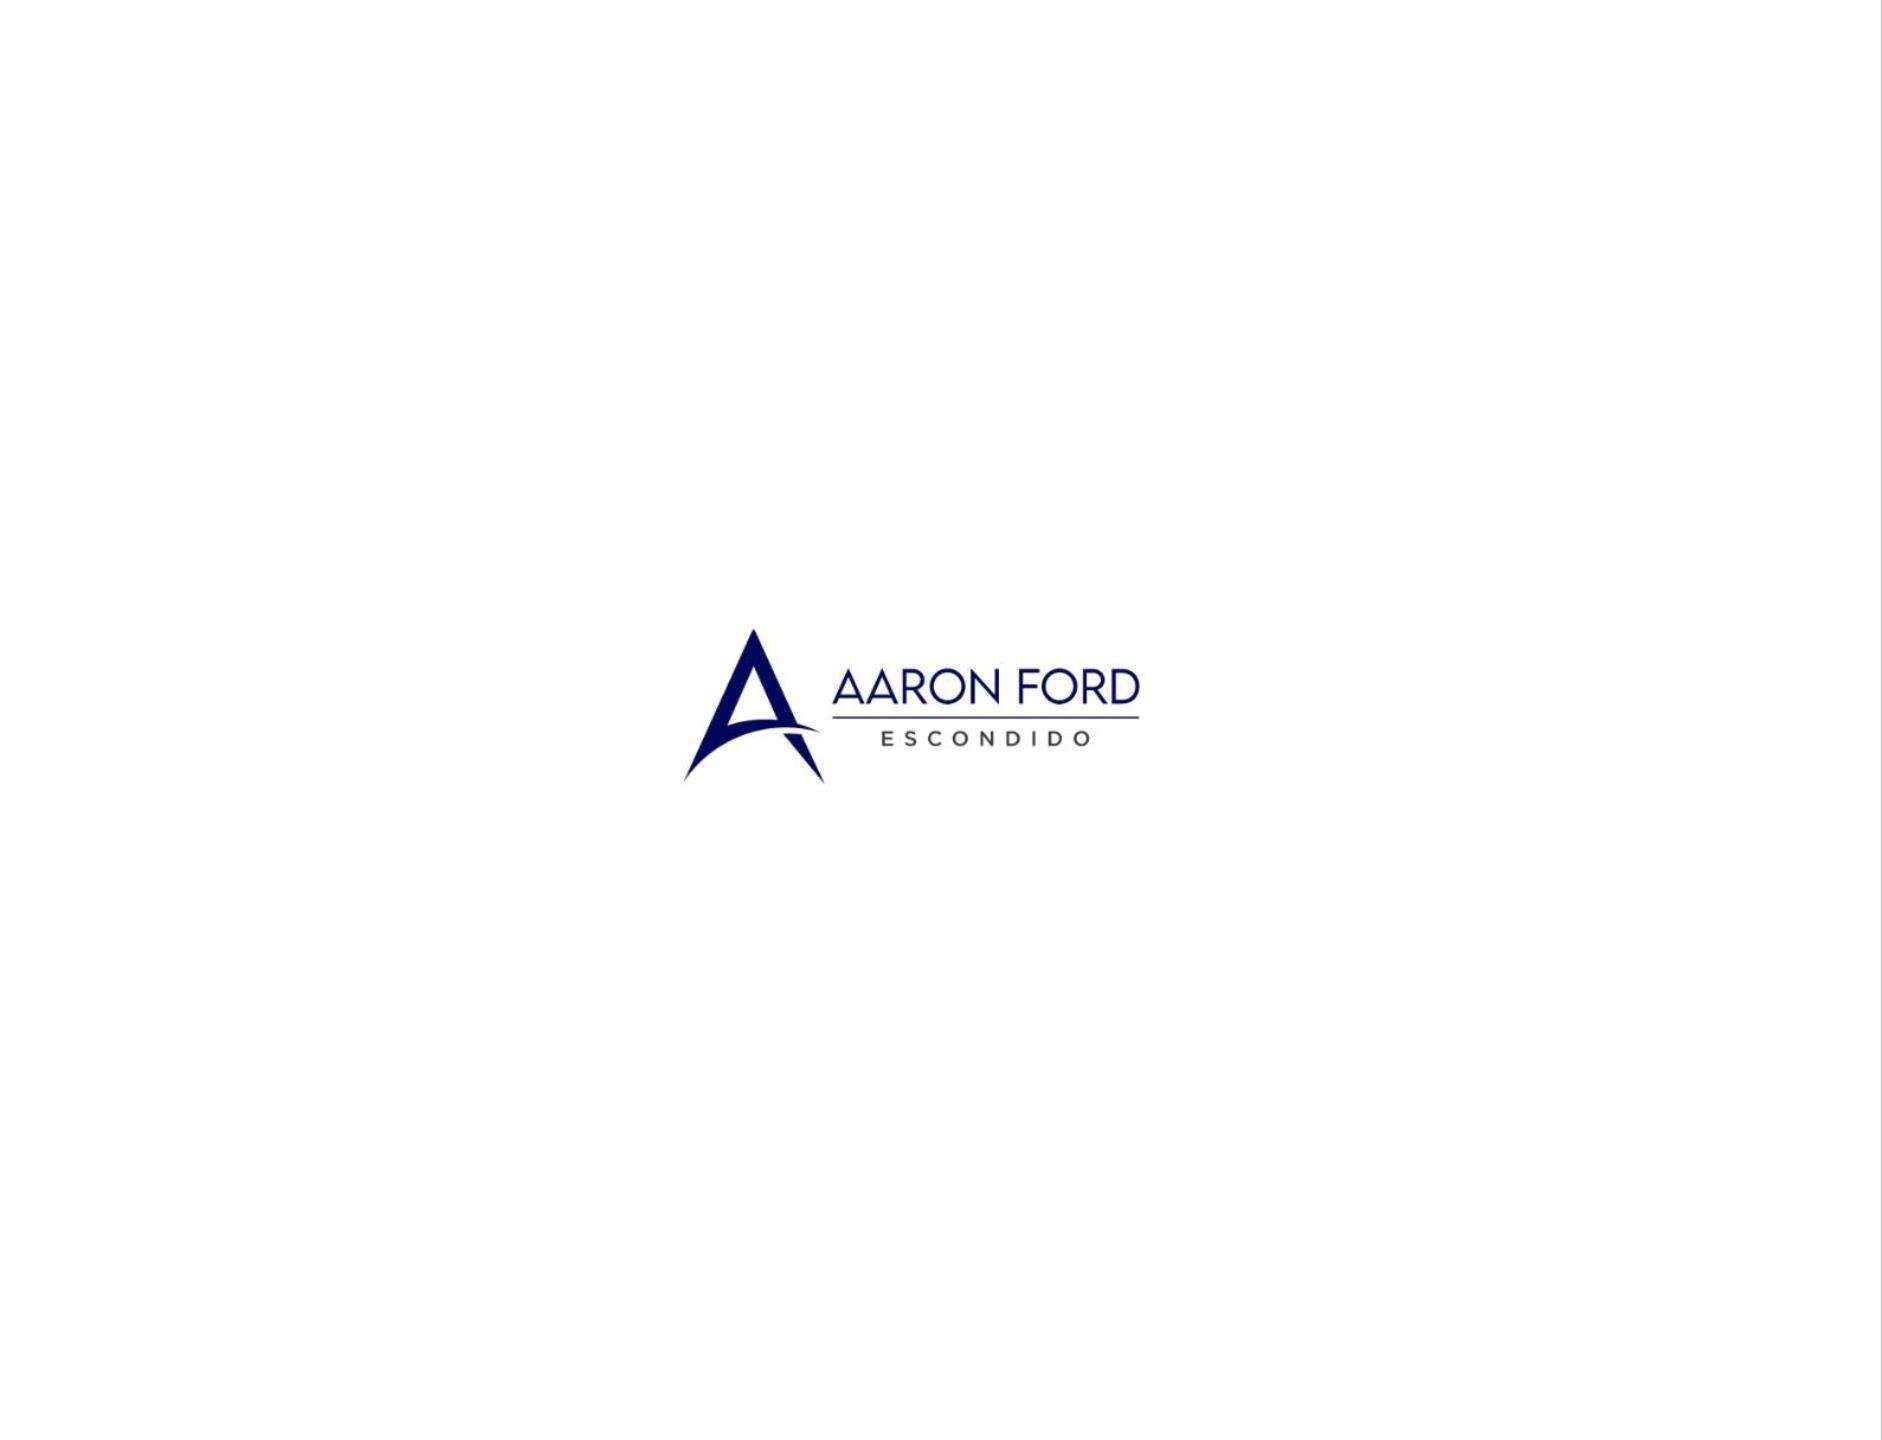 Aaron Ford of Escondido Logo